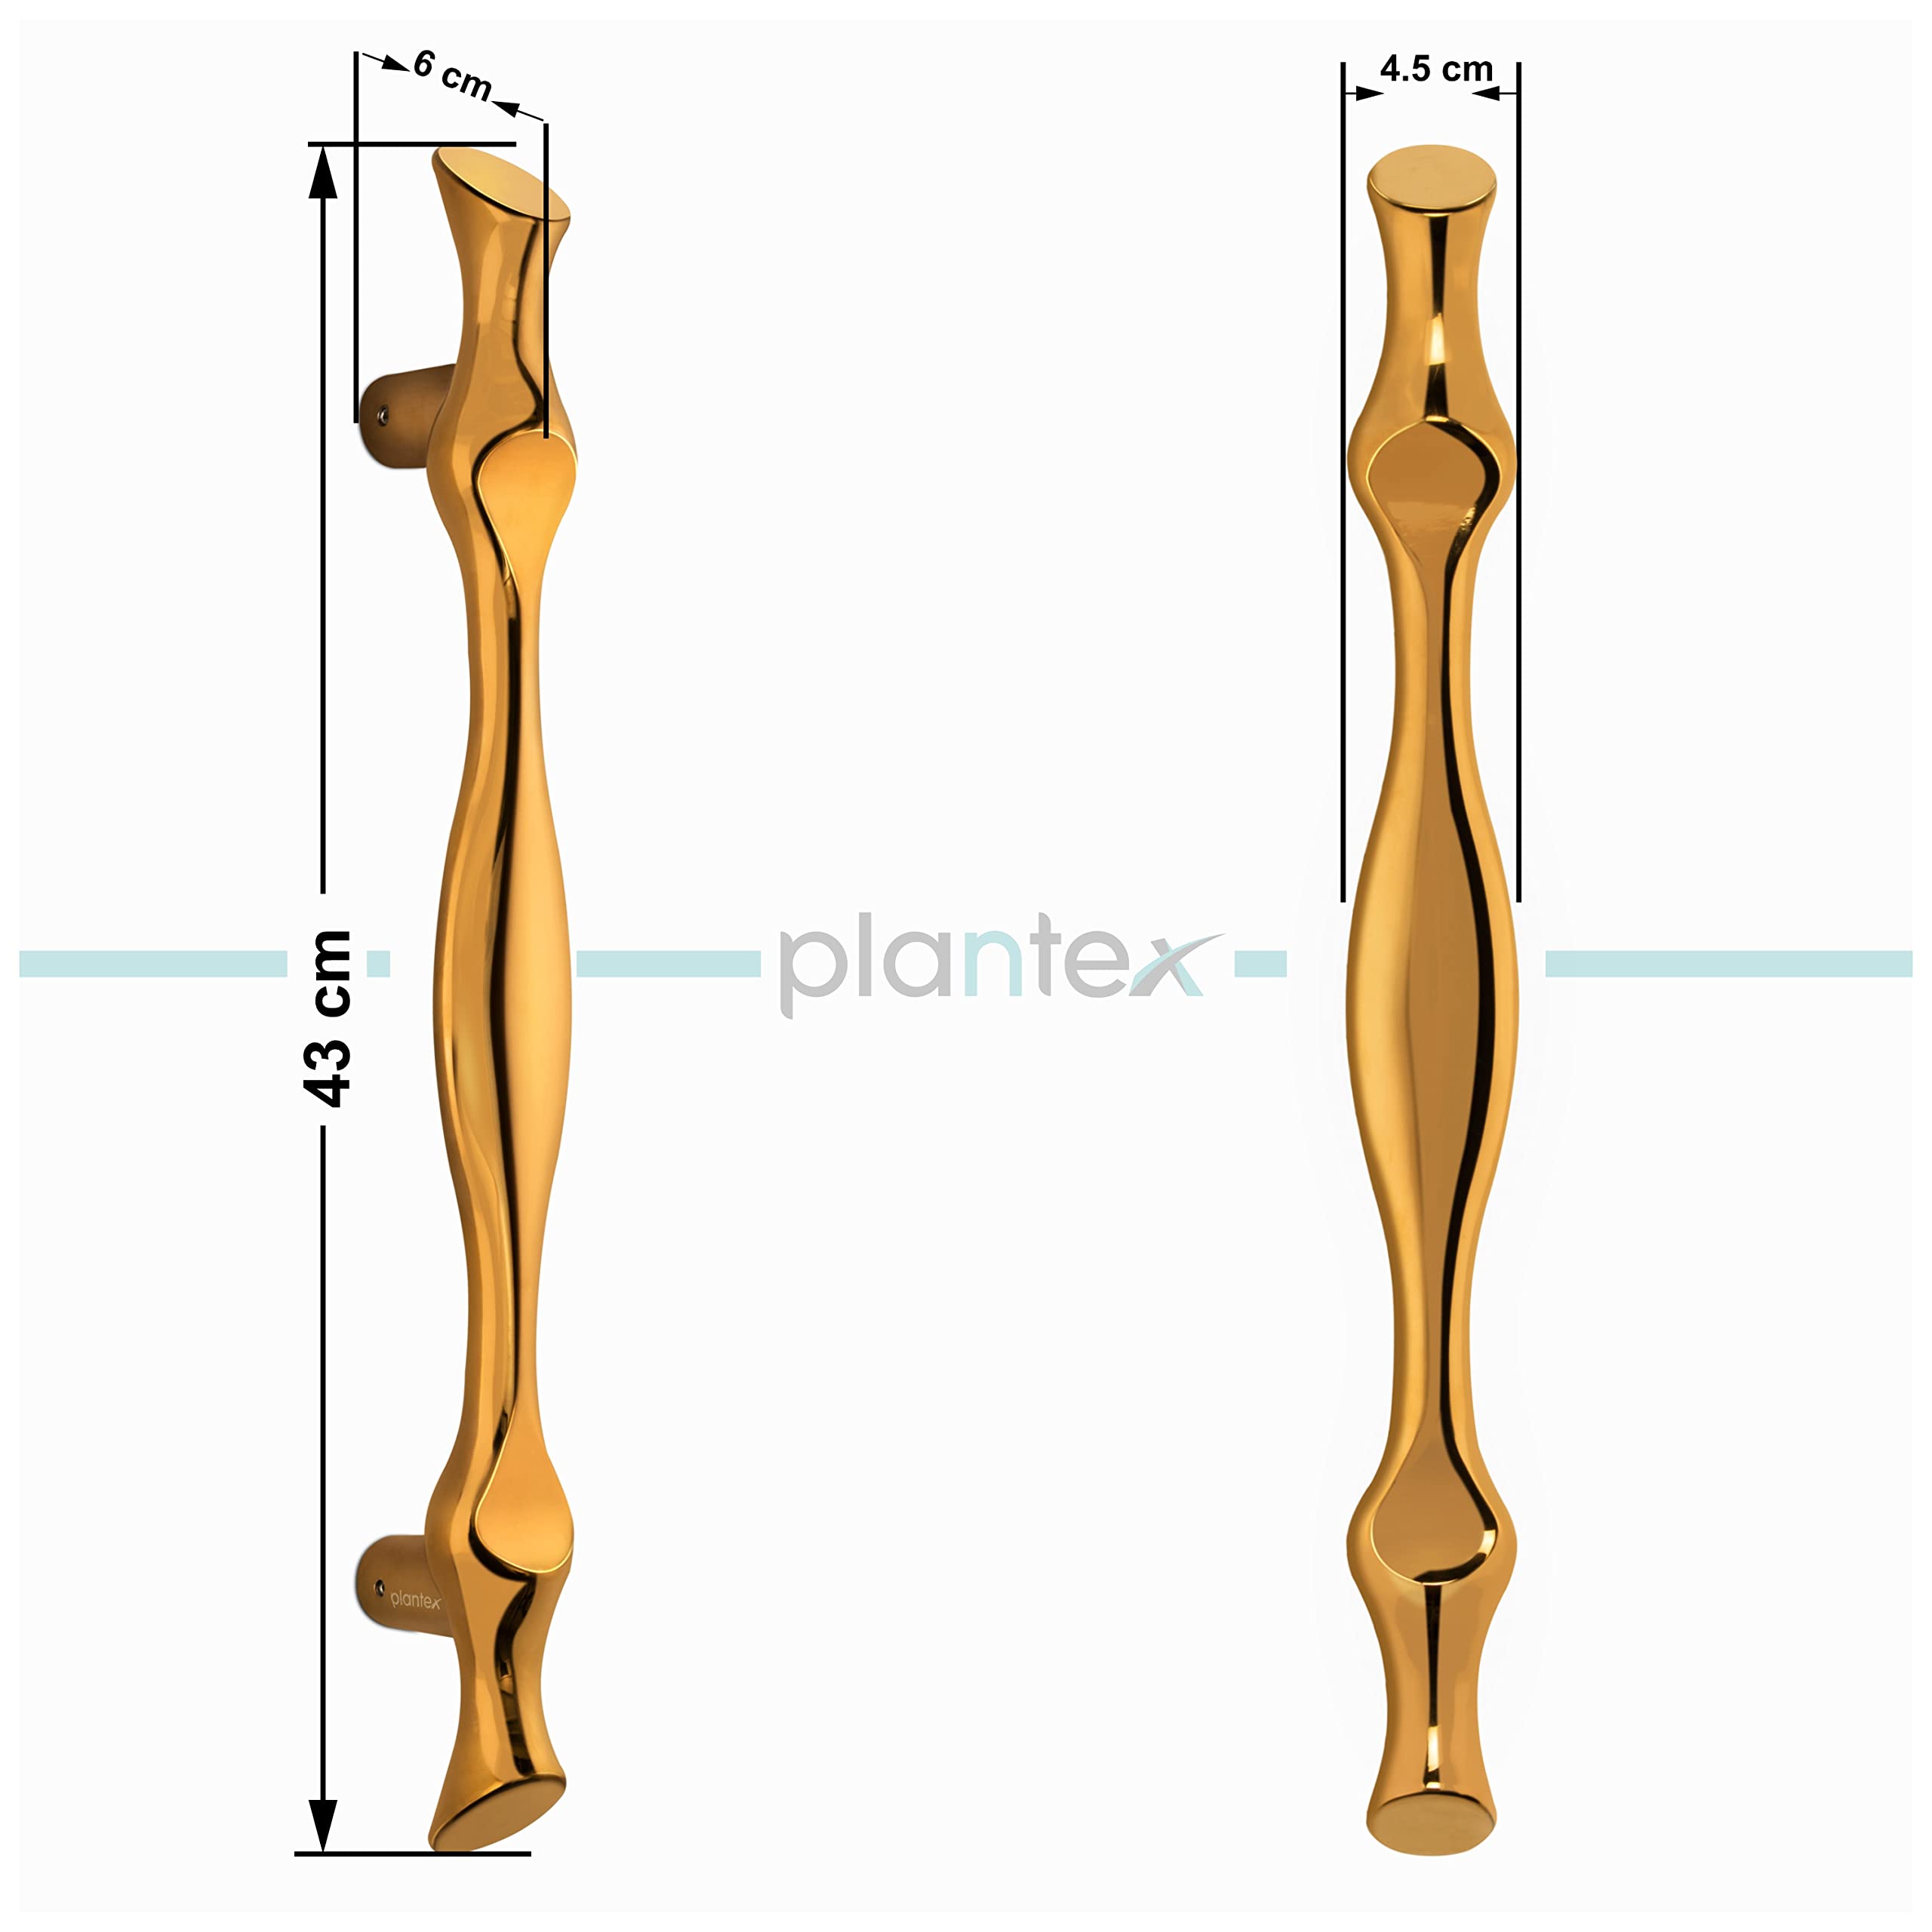 Plantex Heavy Duty Door Handle/Door & Home Decor/17-inches Main Door Handle/Door Pull Push Handle - Pack of 1 ( 308-PVD Gold Finish)